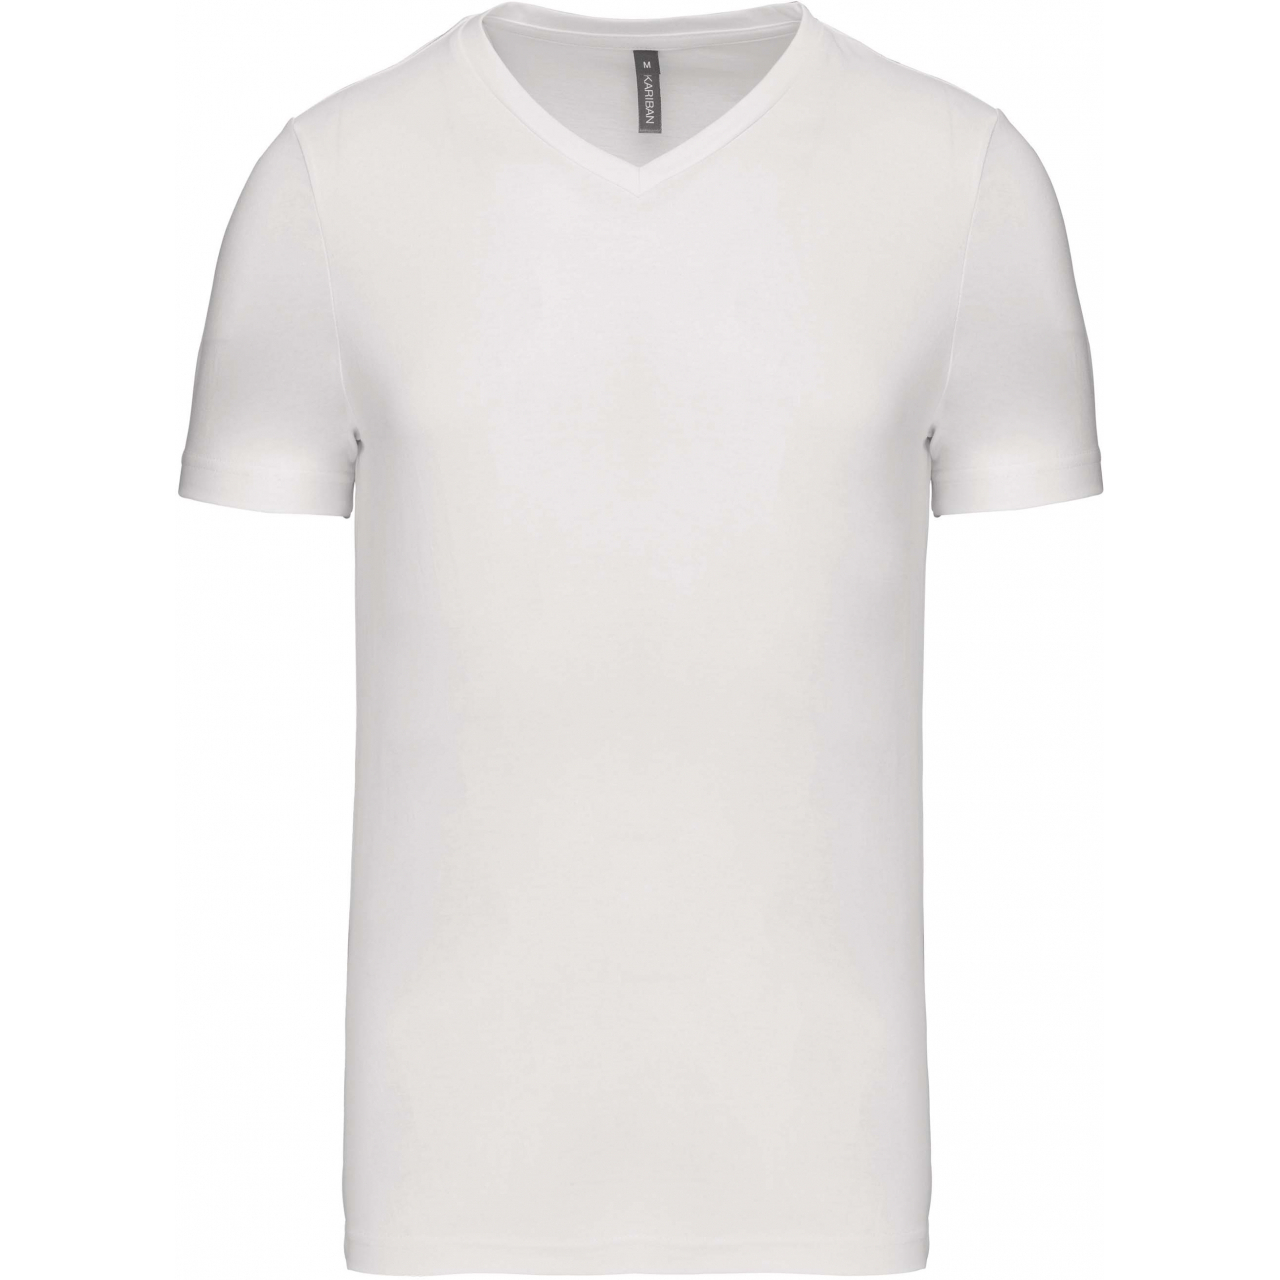 Pánské tričko Kariban krátký rukáv V-neck - bílé, M